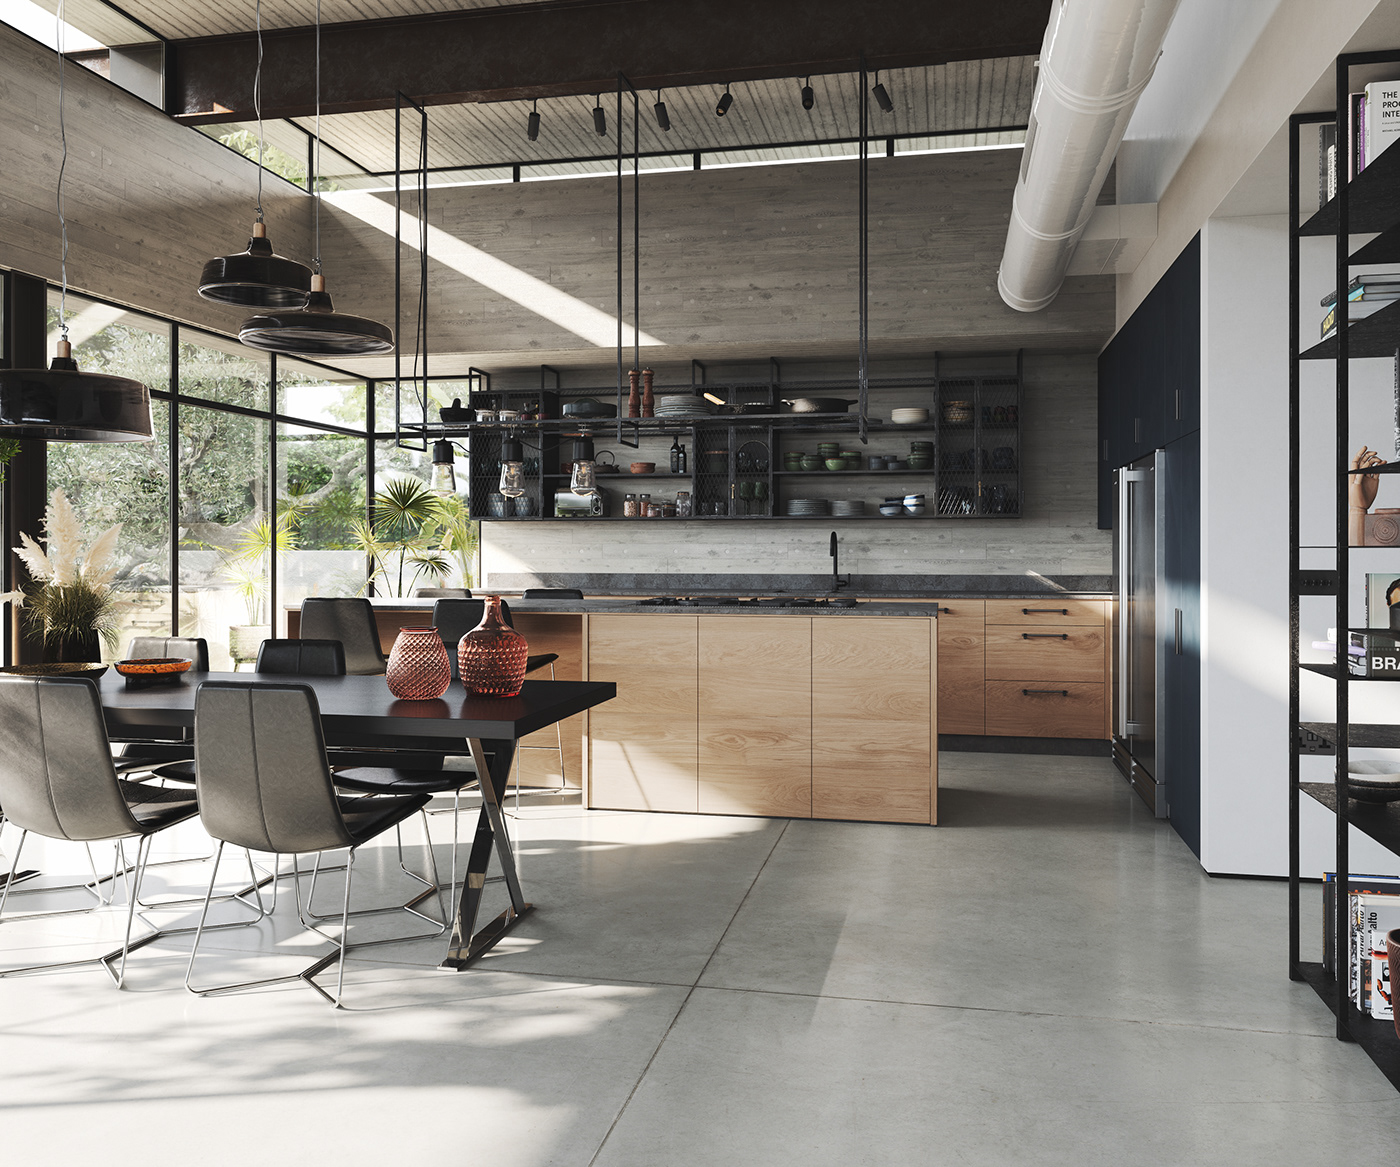 3D architecture archviz concrete FStorm interior design  kitchen modern Render visualization